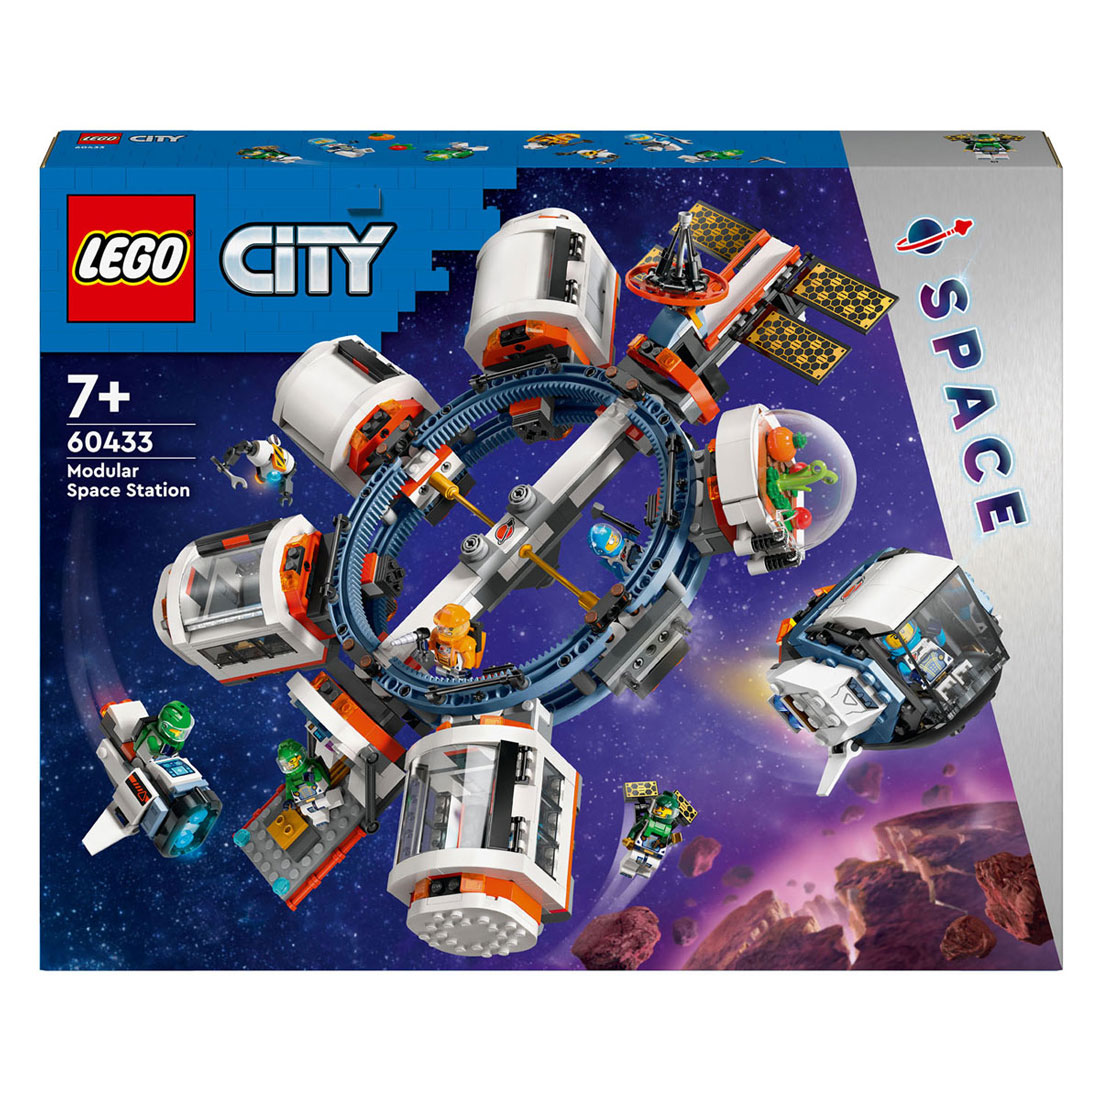 LEGO City 60433 Modulair Ruimtestation